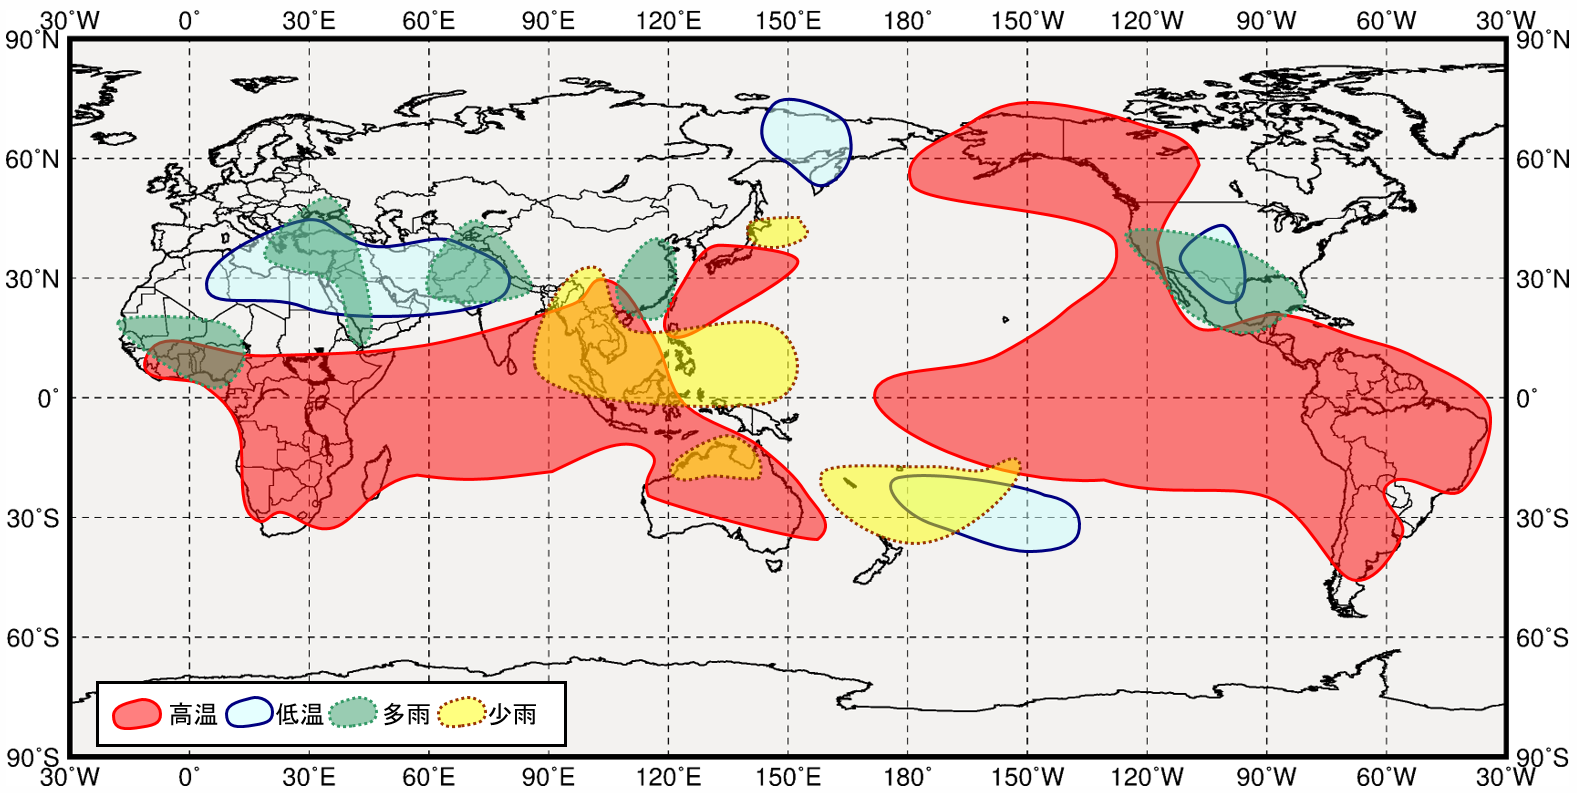 エルニーニョ現象発生時の世界の３月から５月にかけての気温と降水量の傾向の分布図